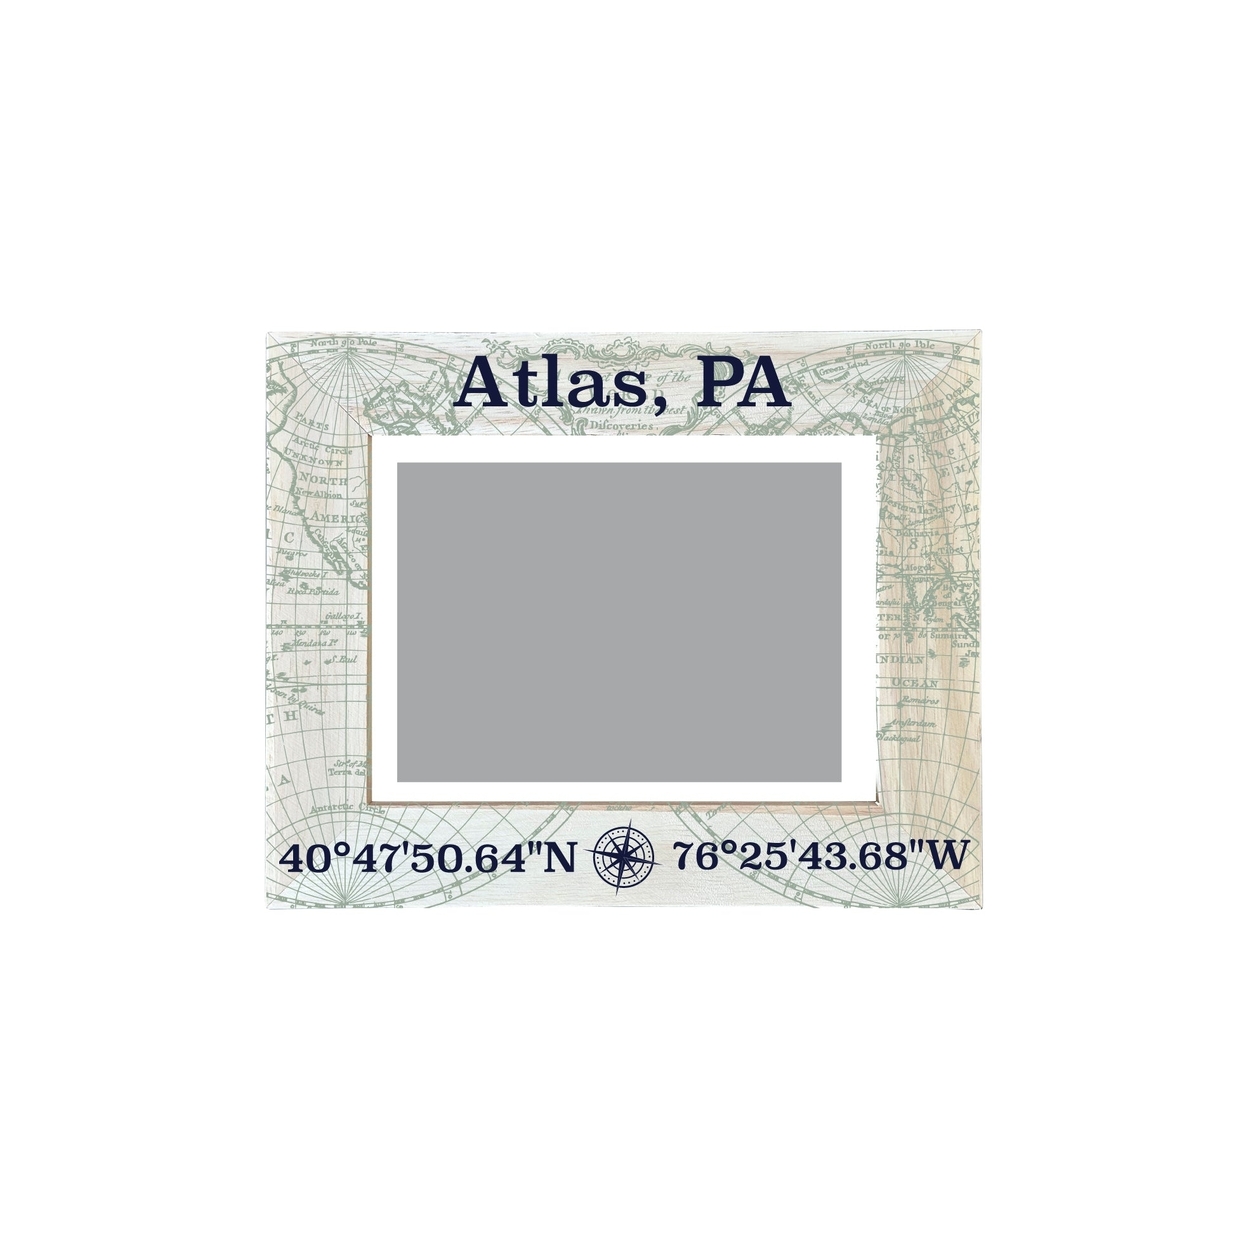 Atlas Pennsylvania Souvenir Wooden Photo Frame Compass Coordinates Design Matted To 4 X 6